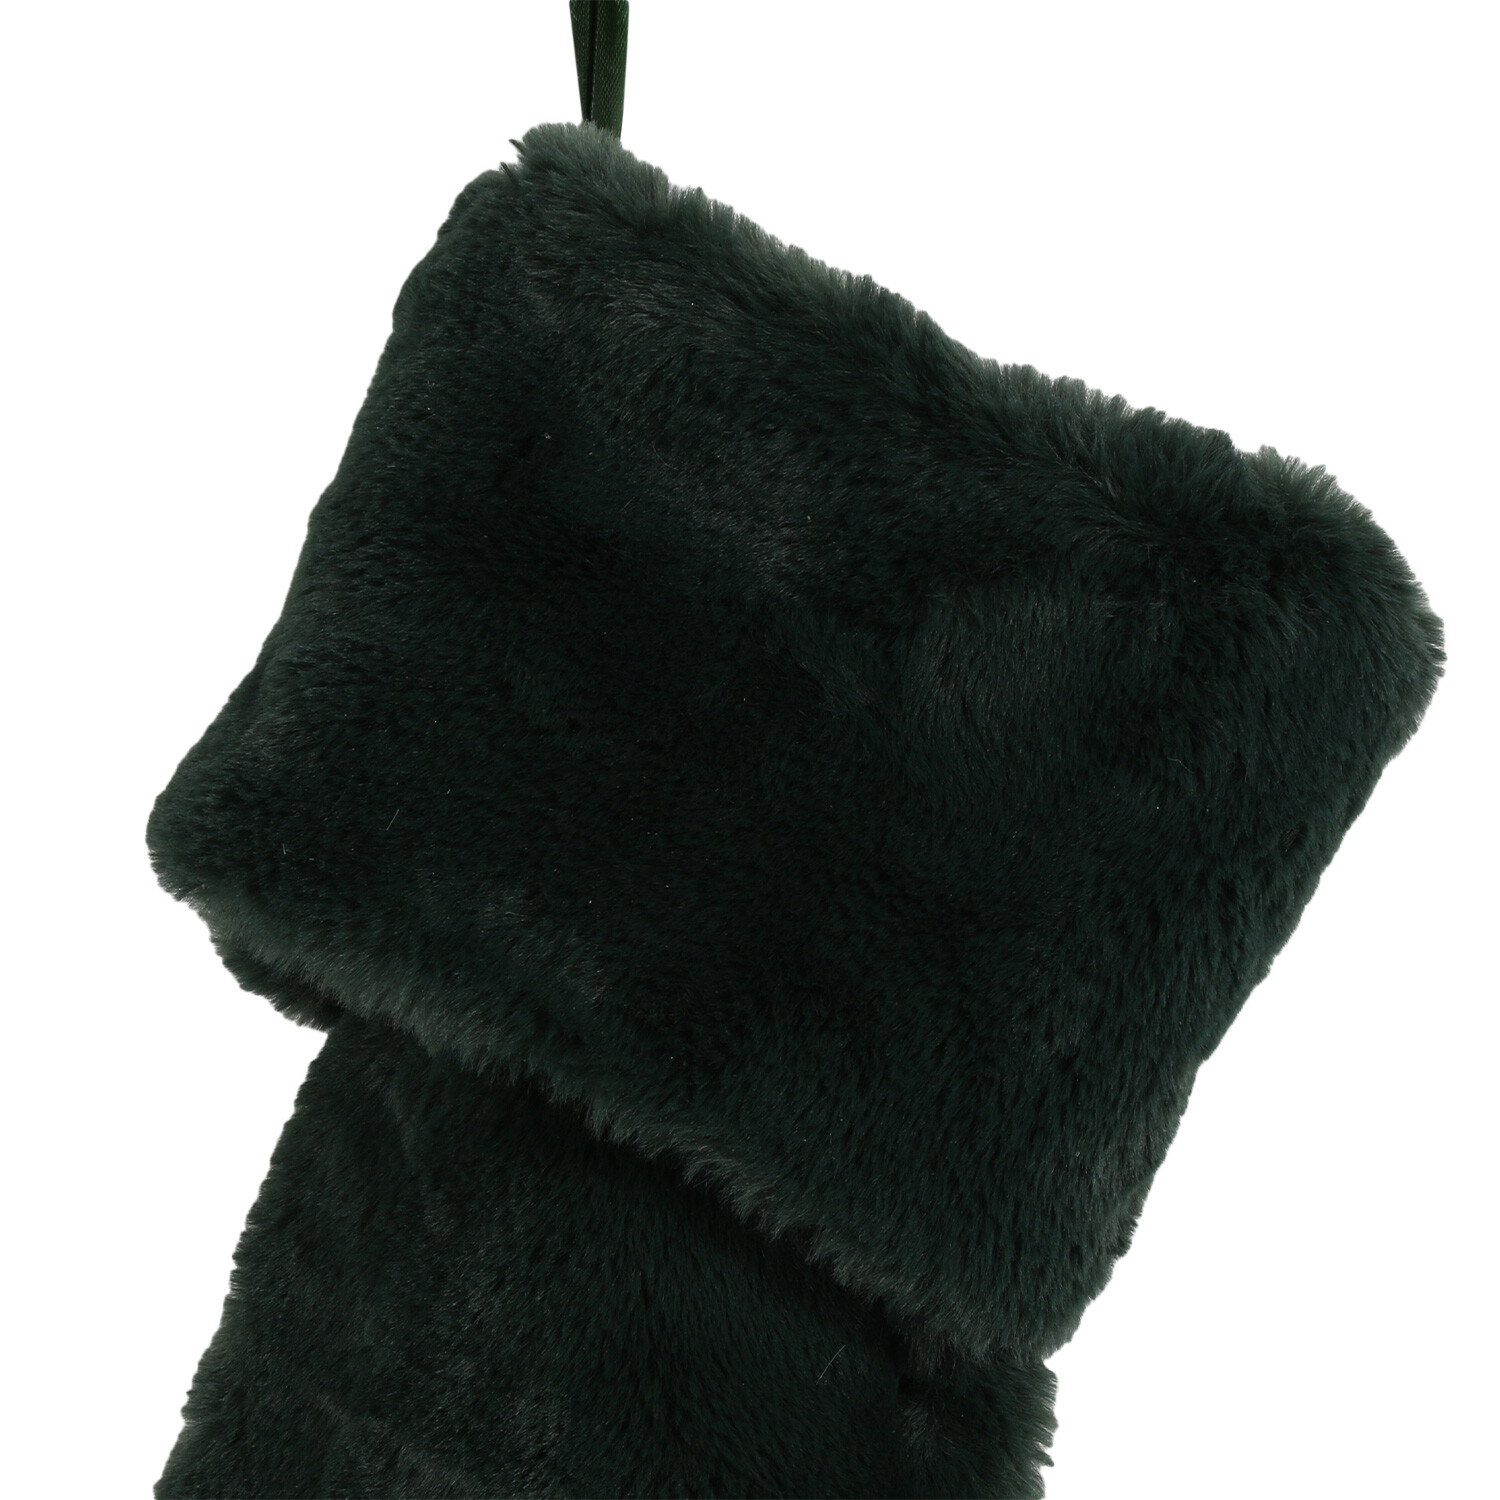 Green Faux Fur Stocking Image 2